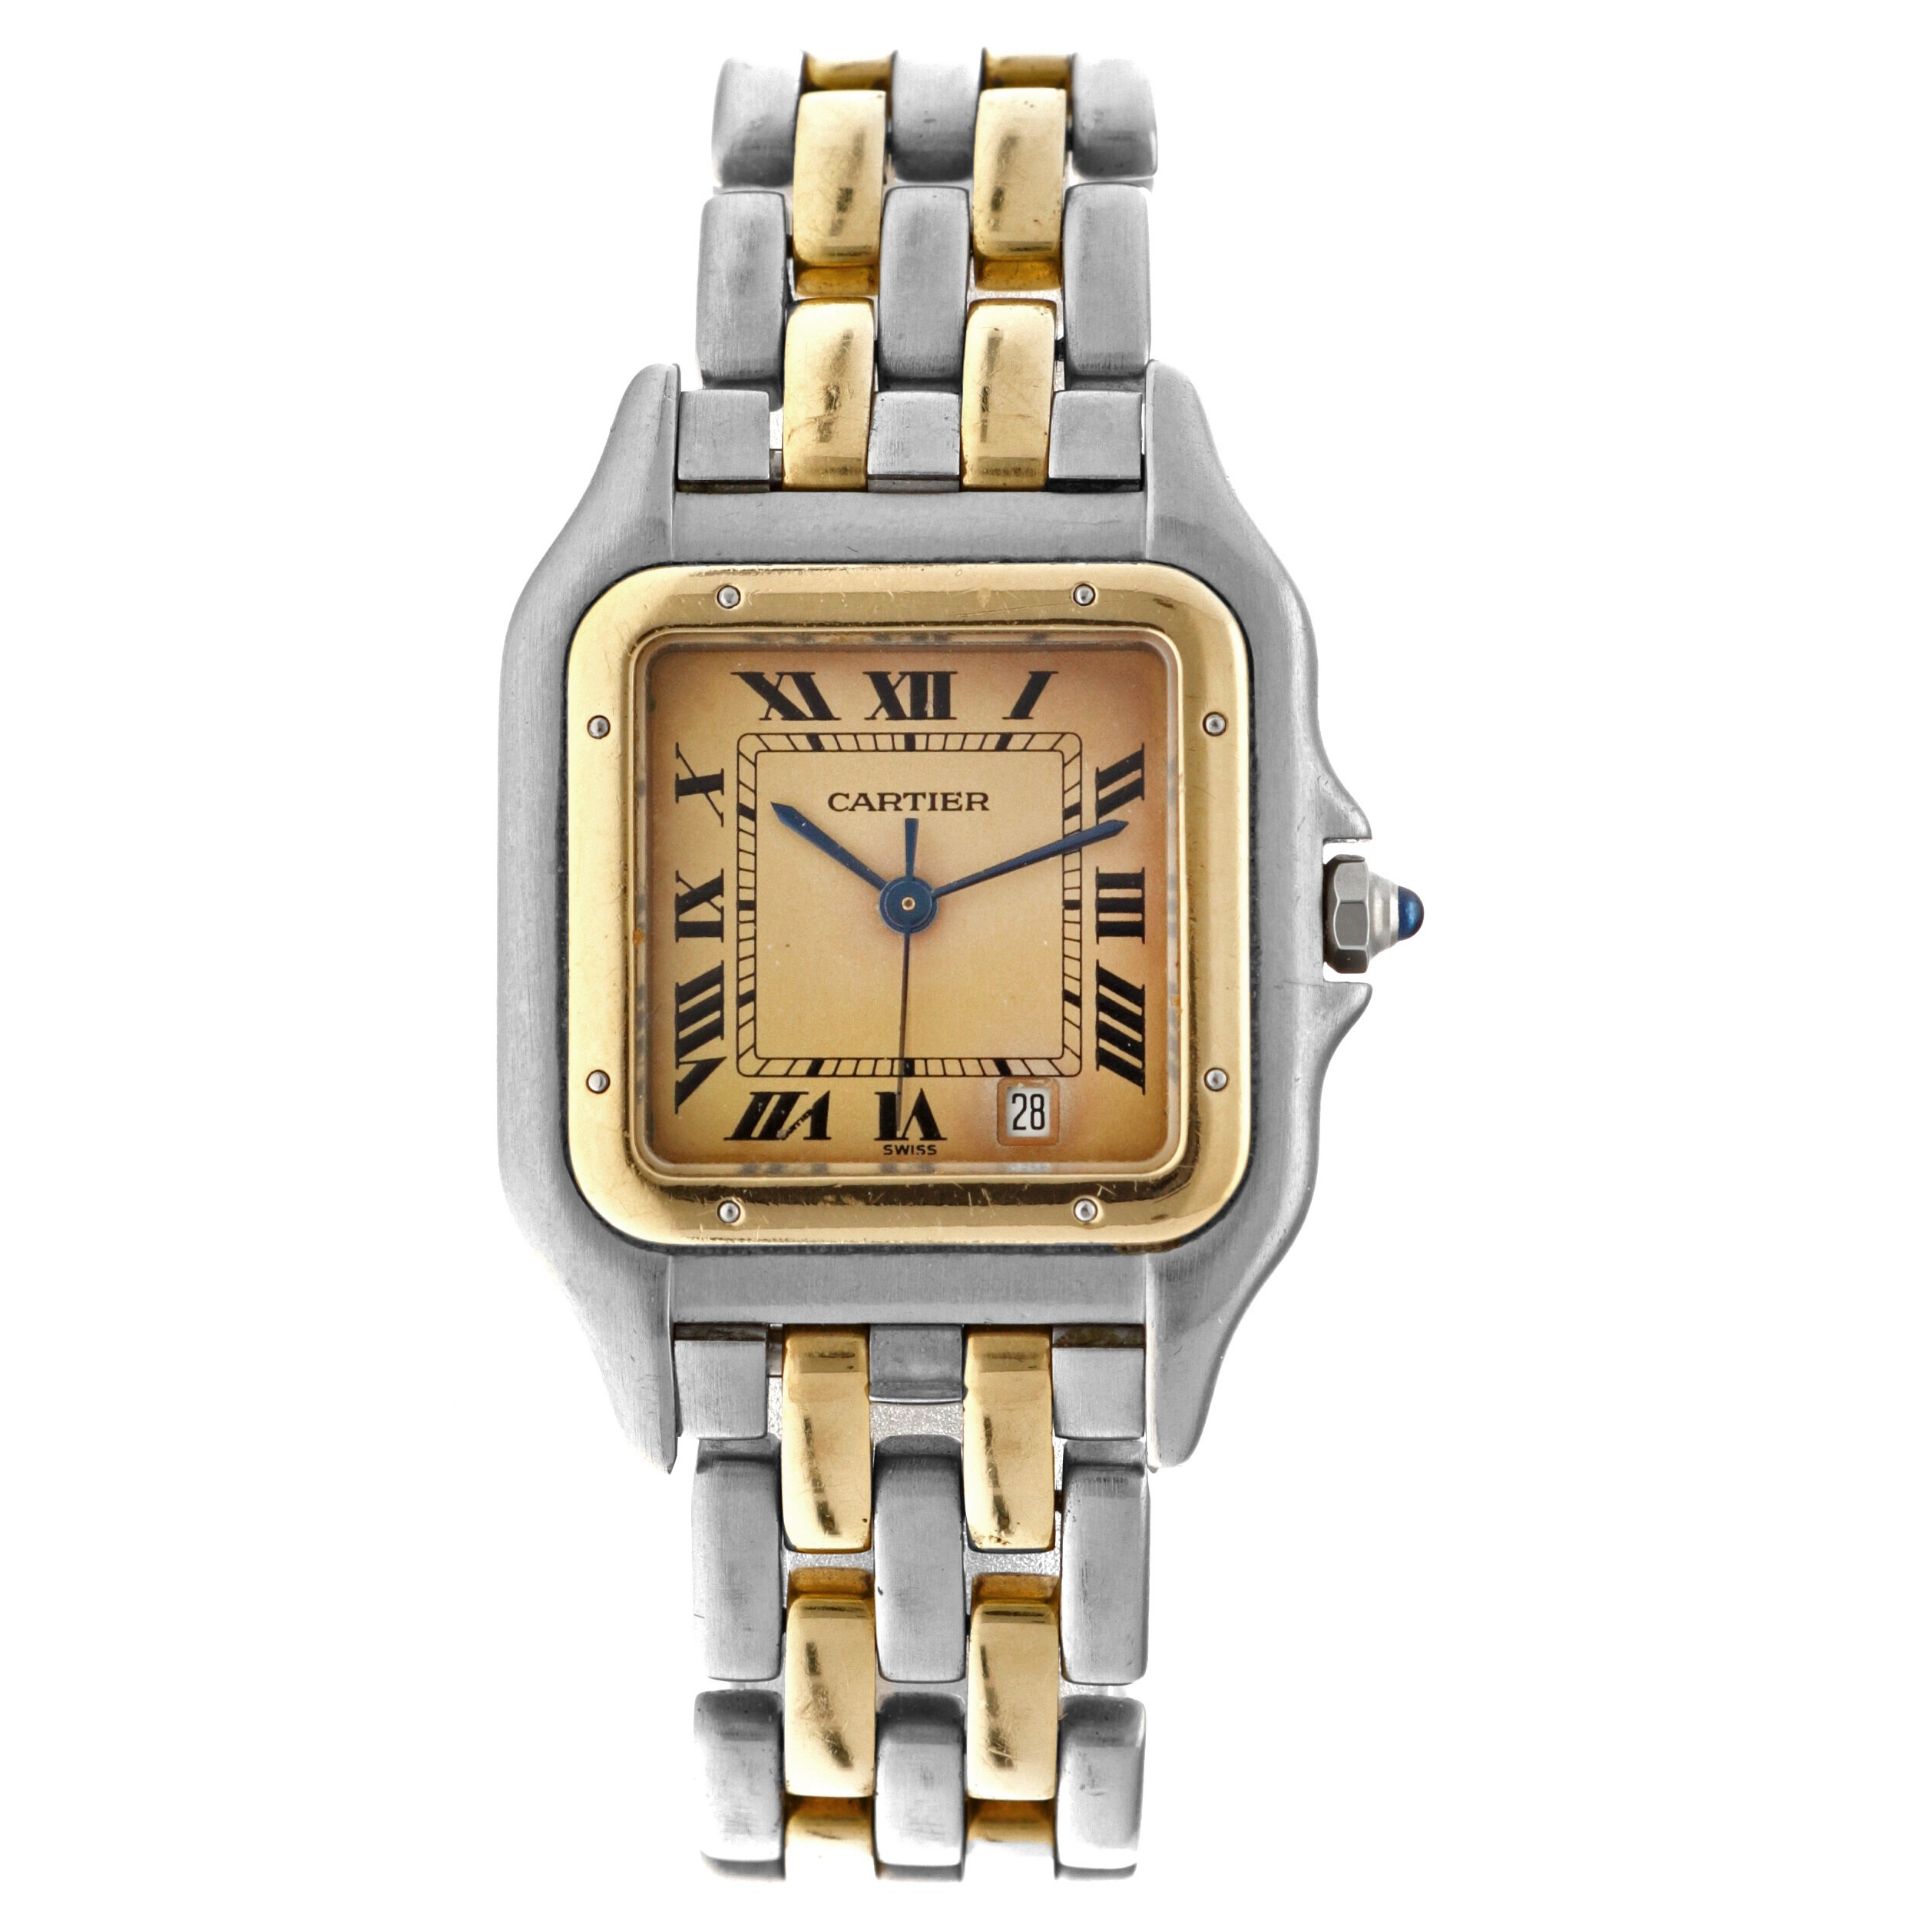 No Reserve - Cartier Panthère 8394 - Midsize watch - 1988.